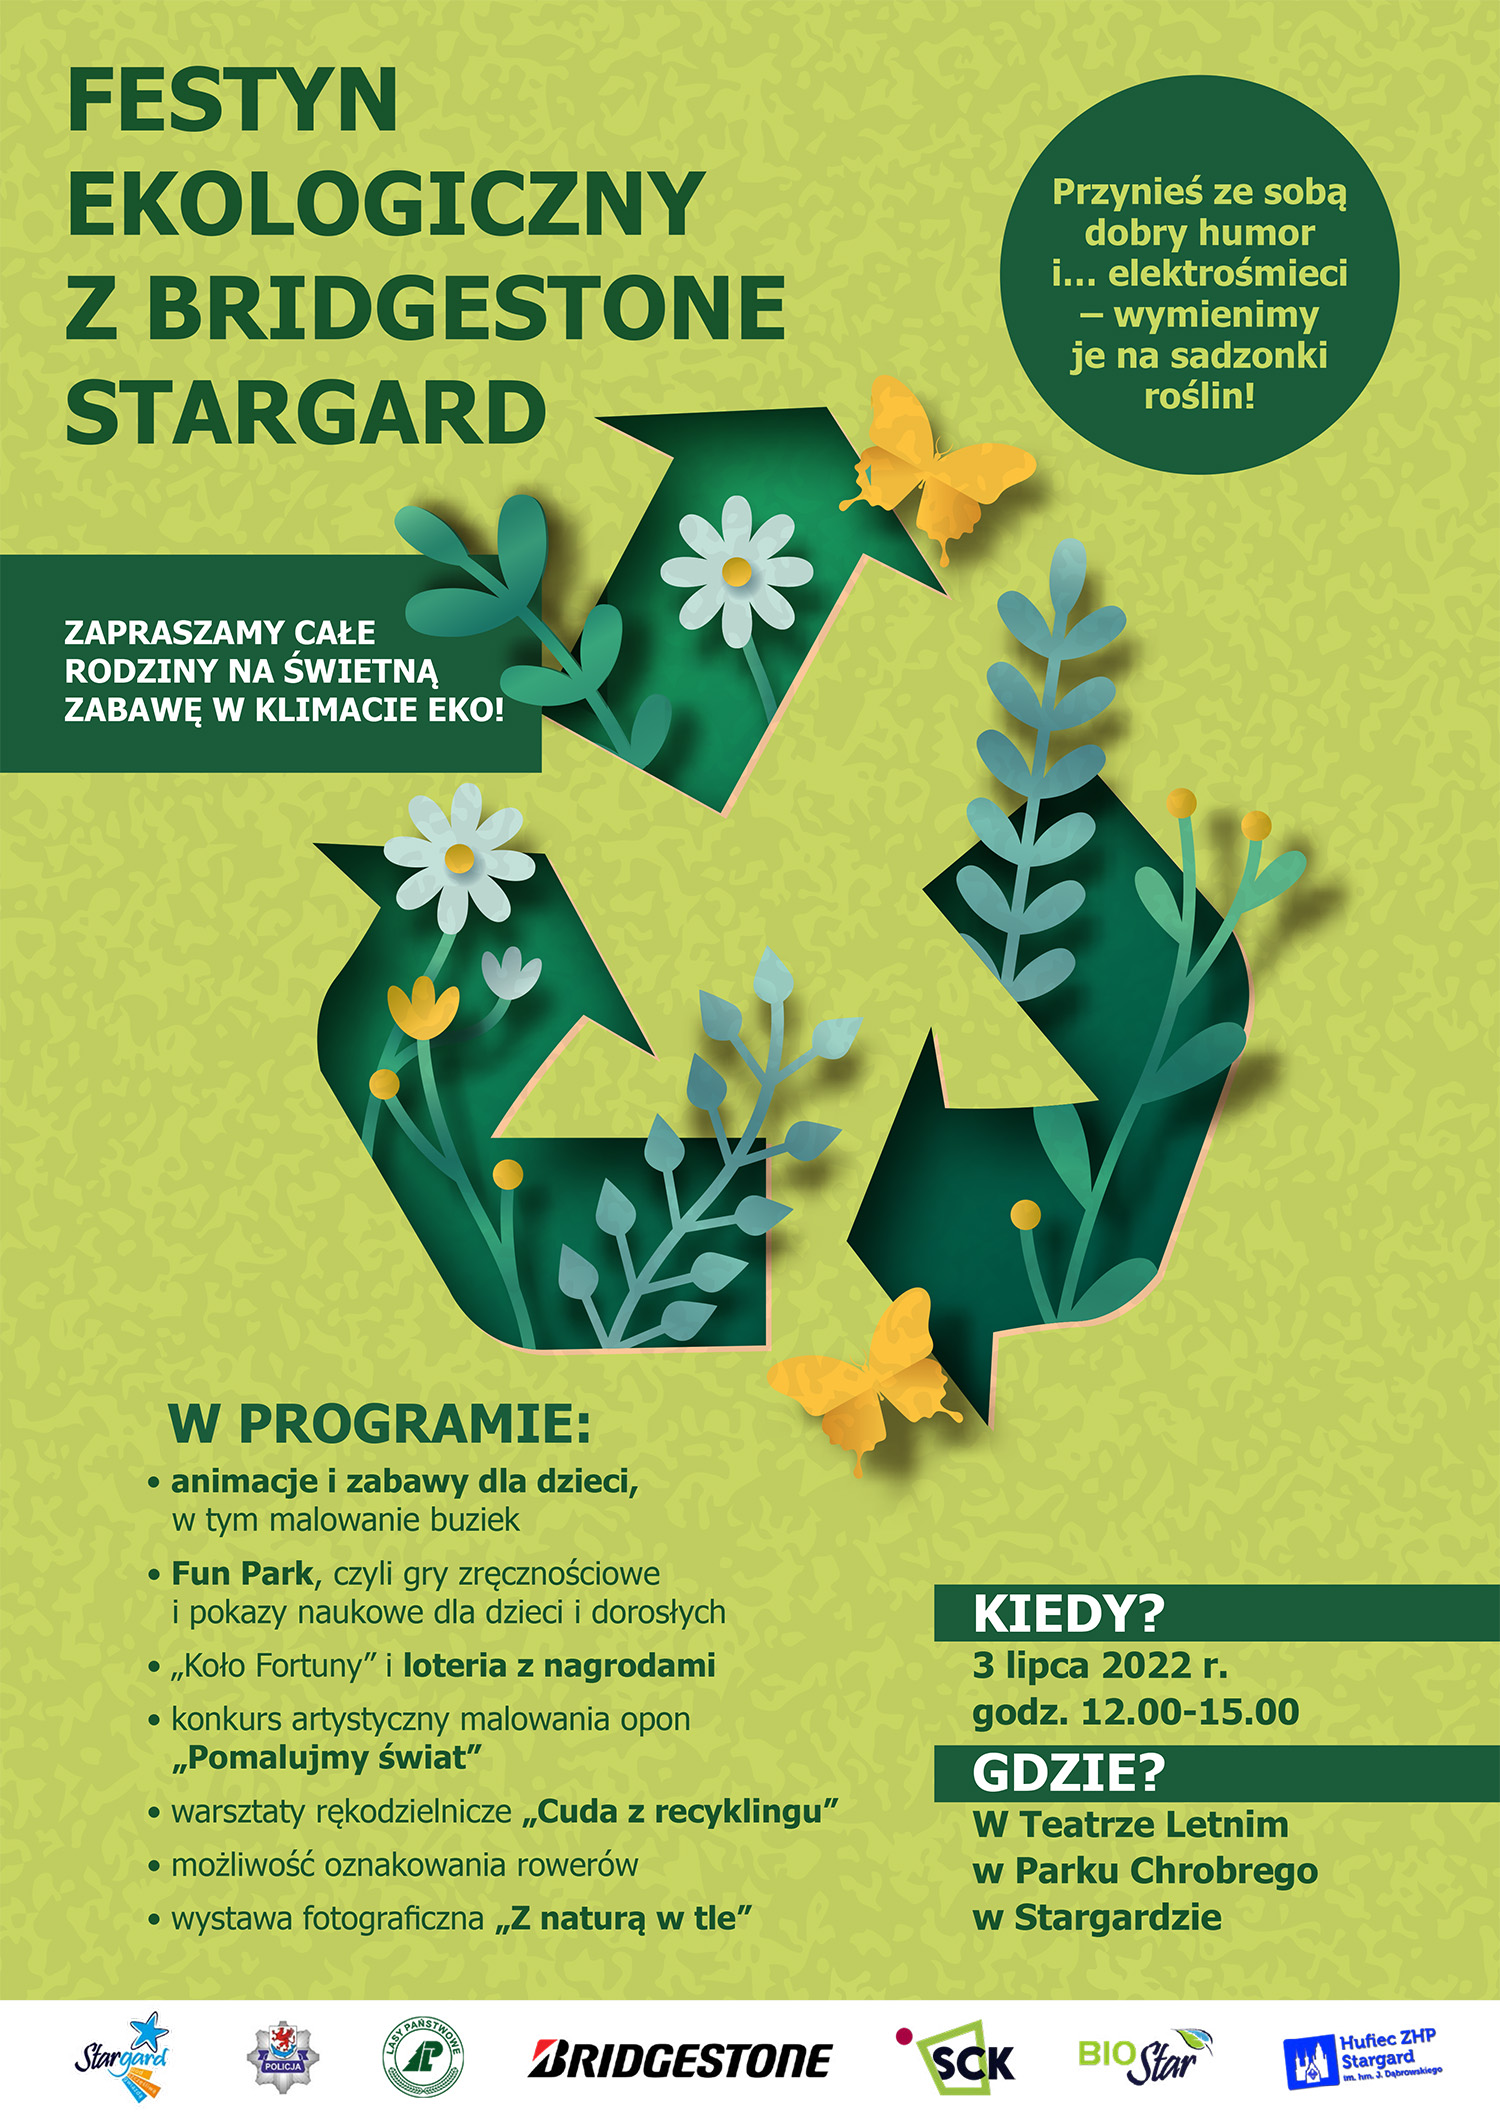 Festyn Ekologiczny z firmą Bridgestone Stargard